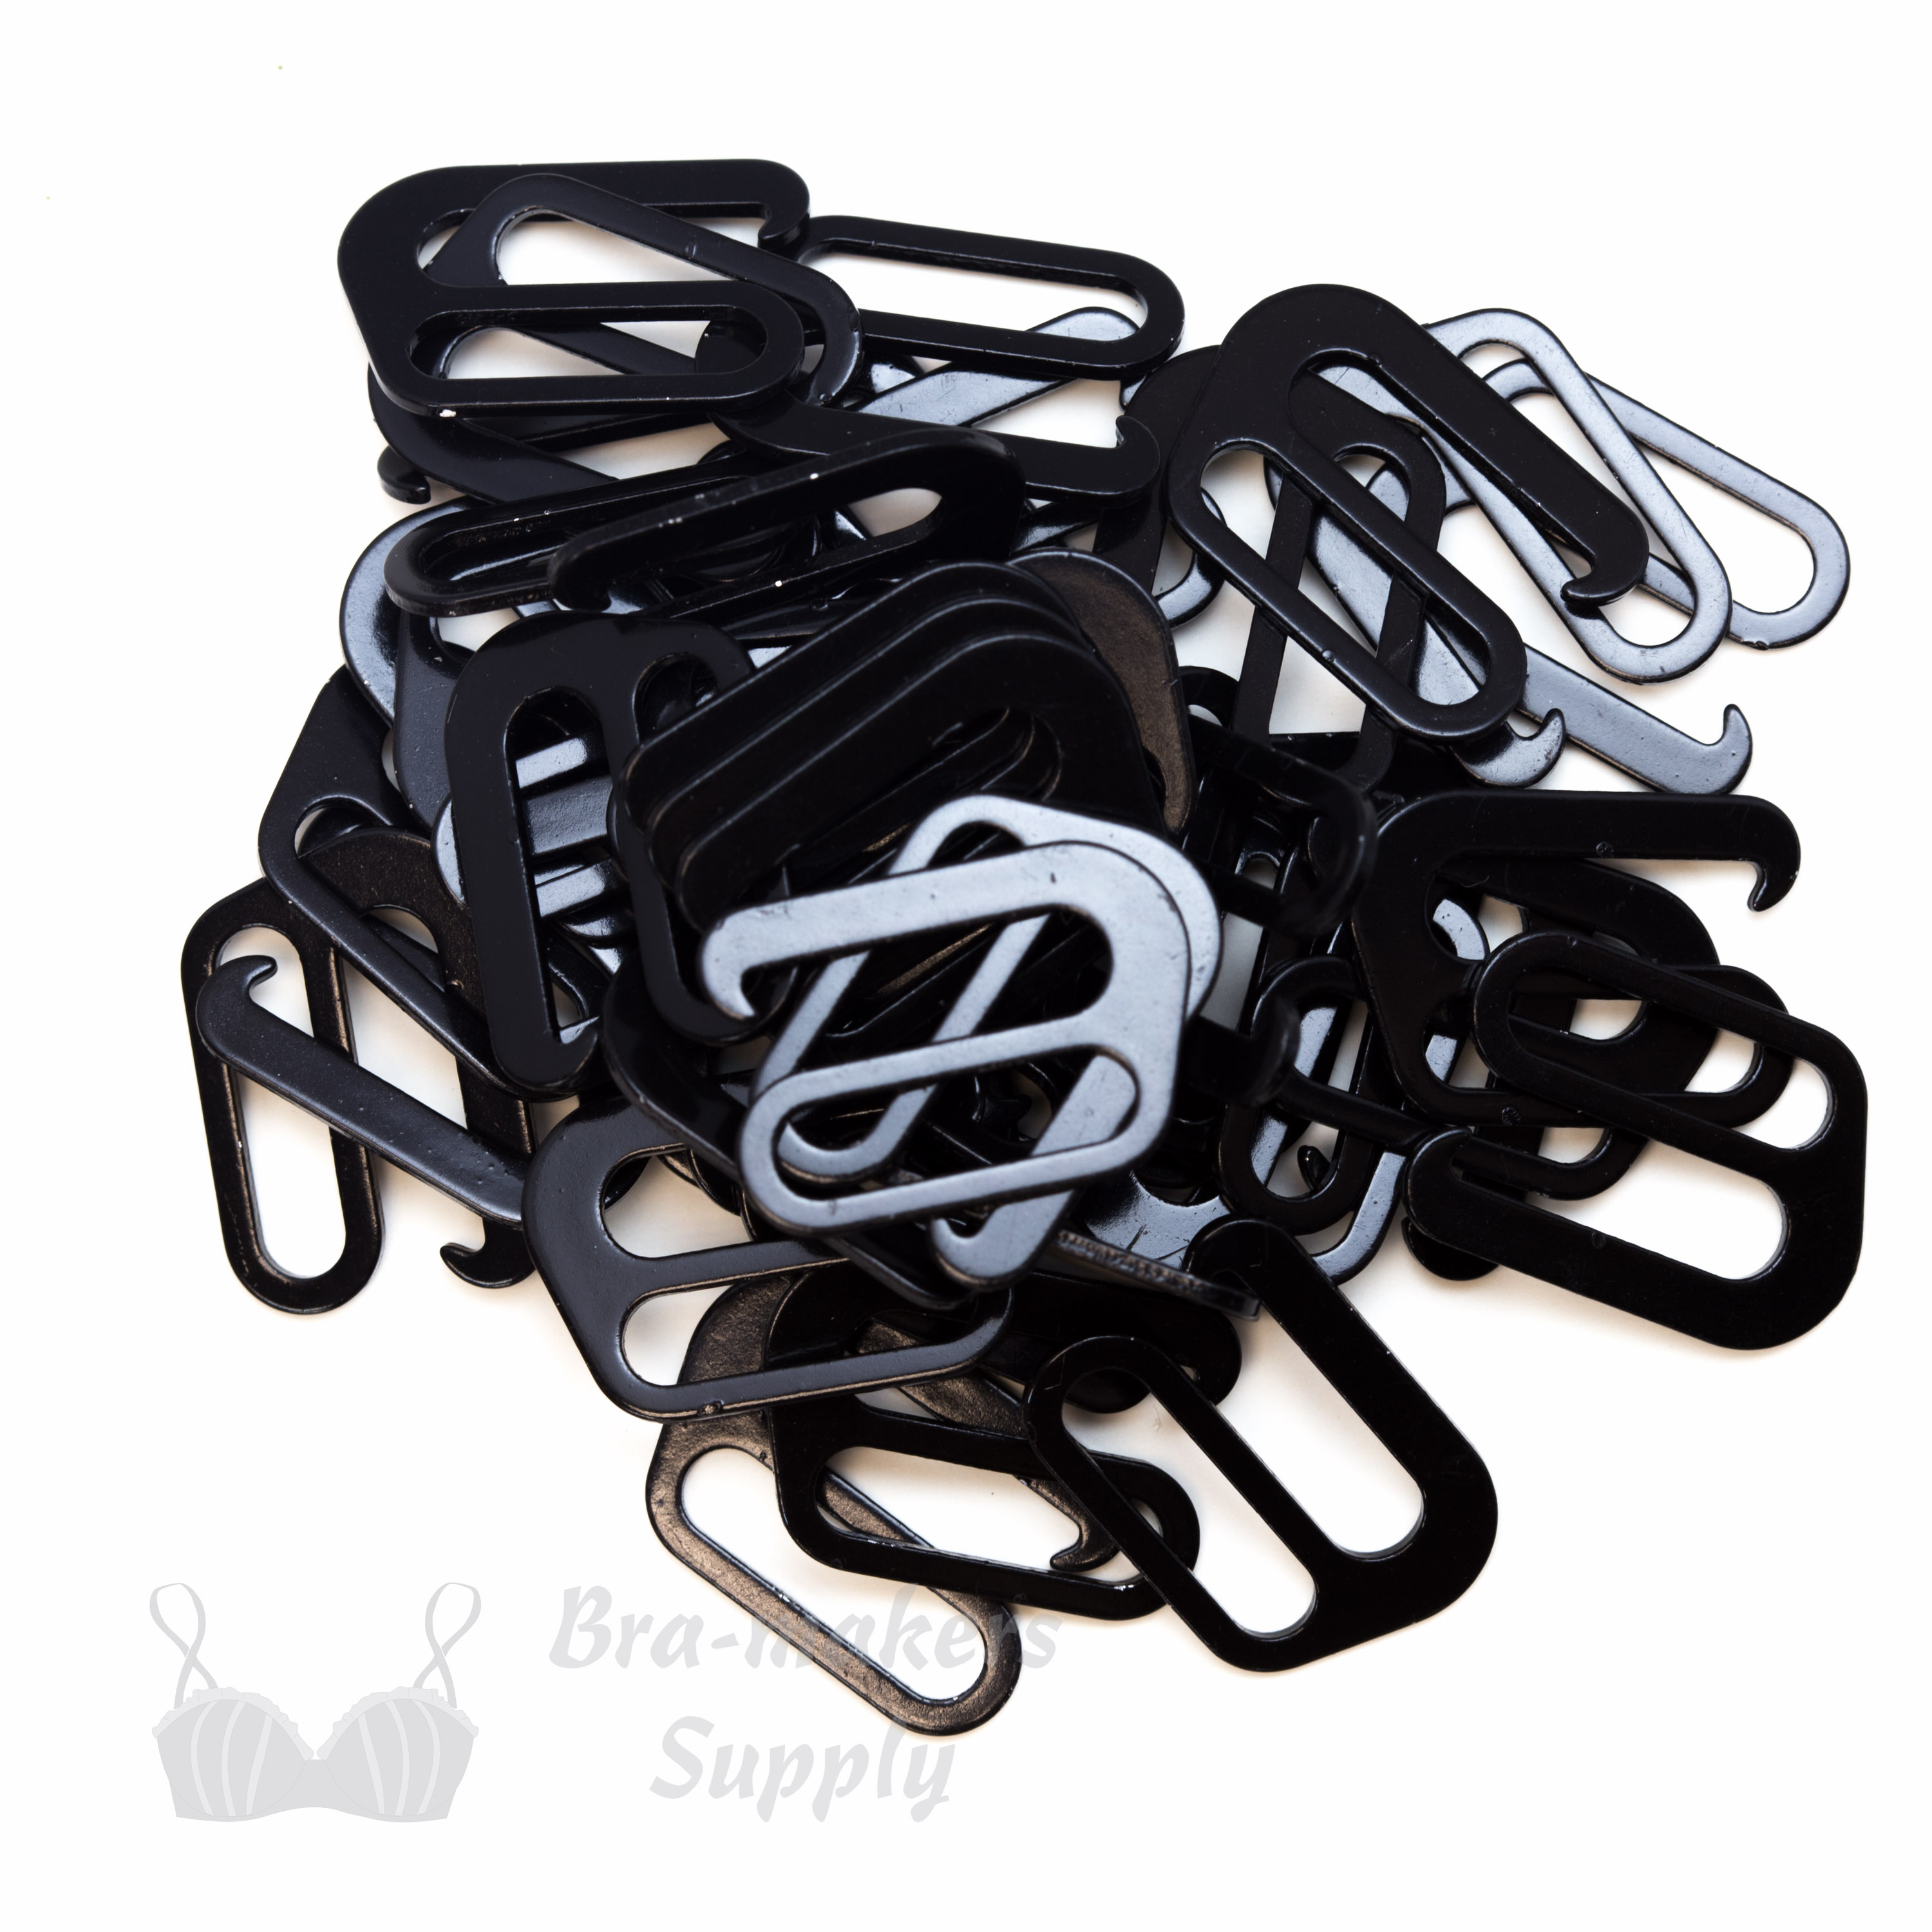 Nylon Coated Metal G-Hooks - for detachable straps - Bra-Makers Supply